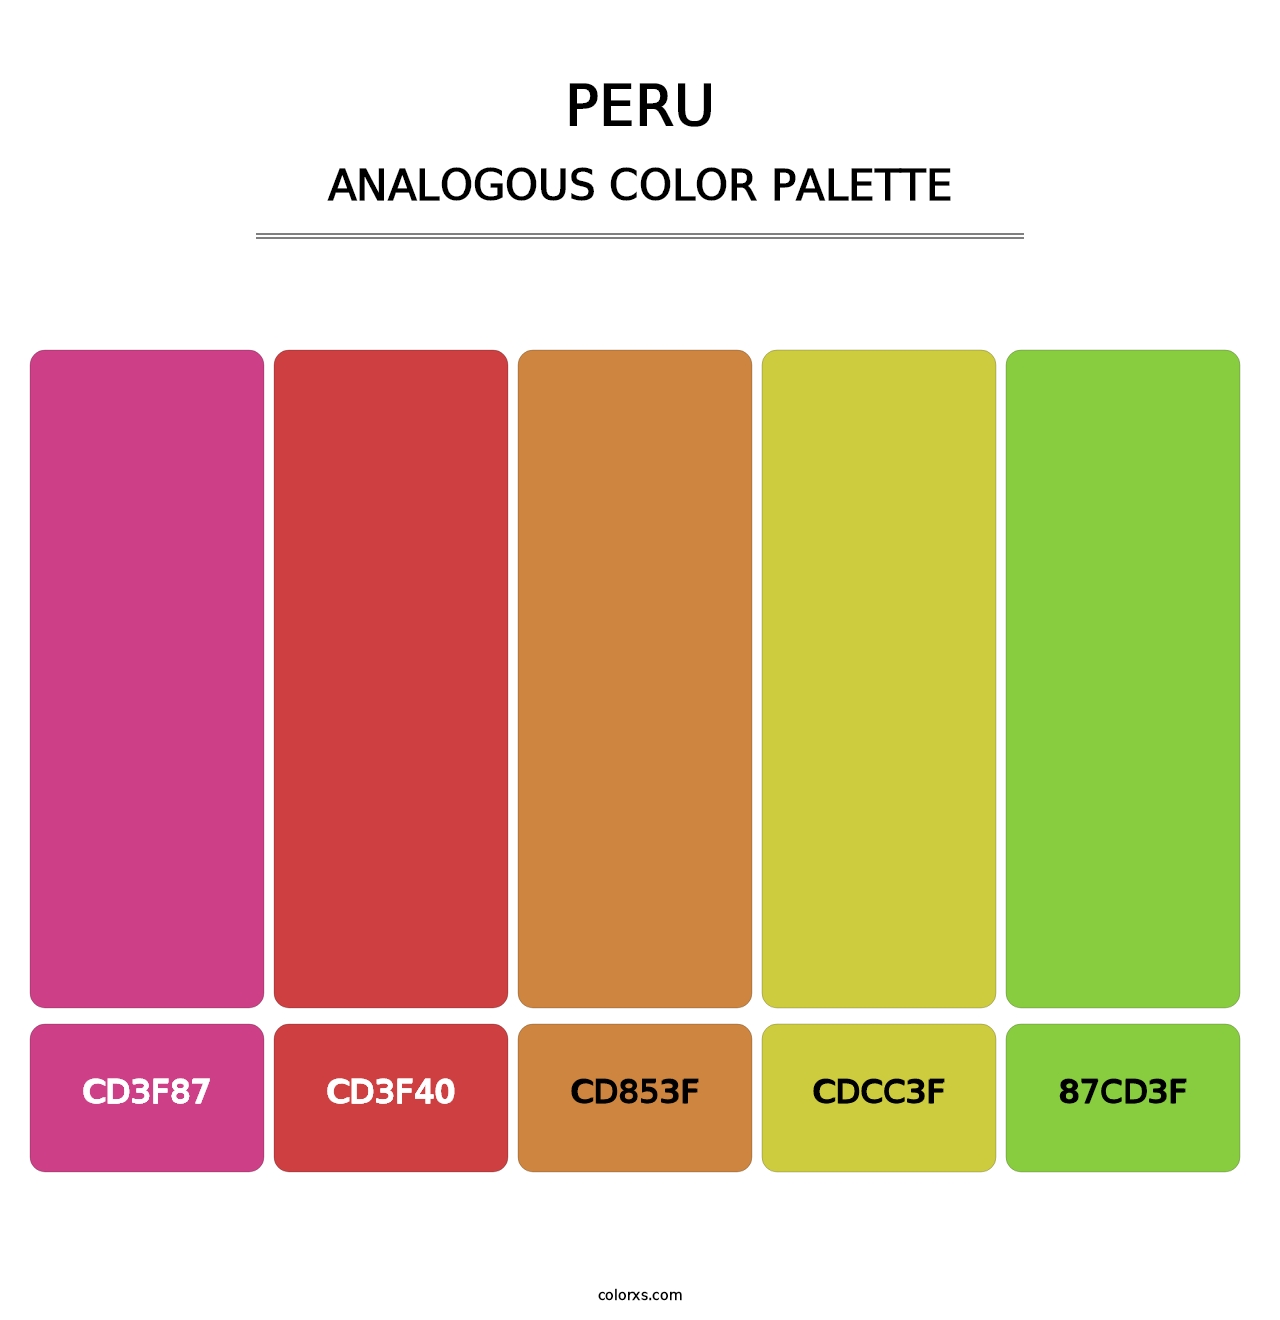 Peru - Analogous Color Palette